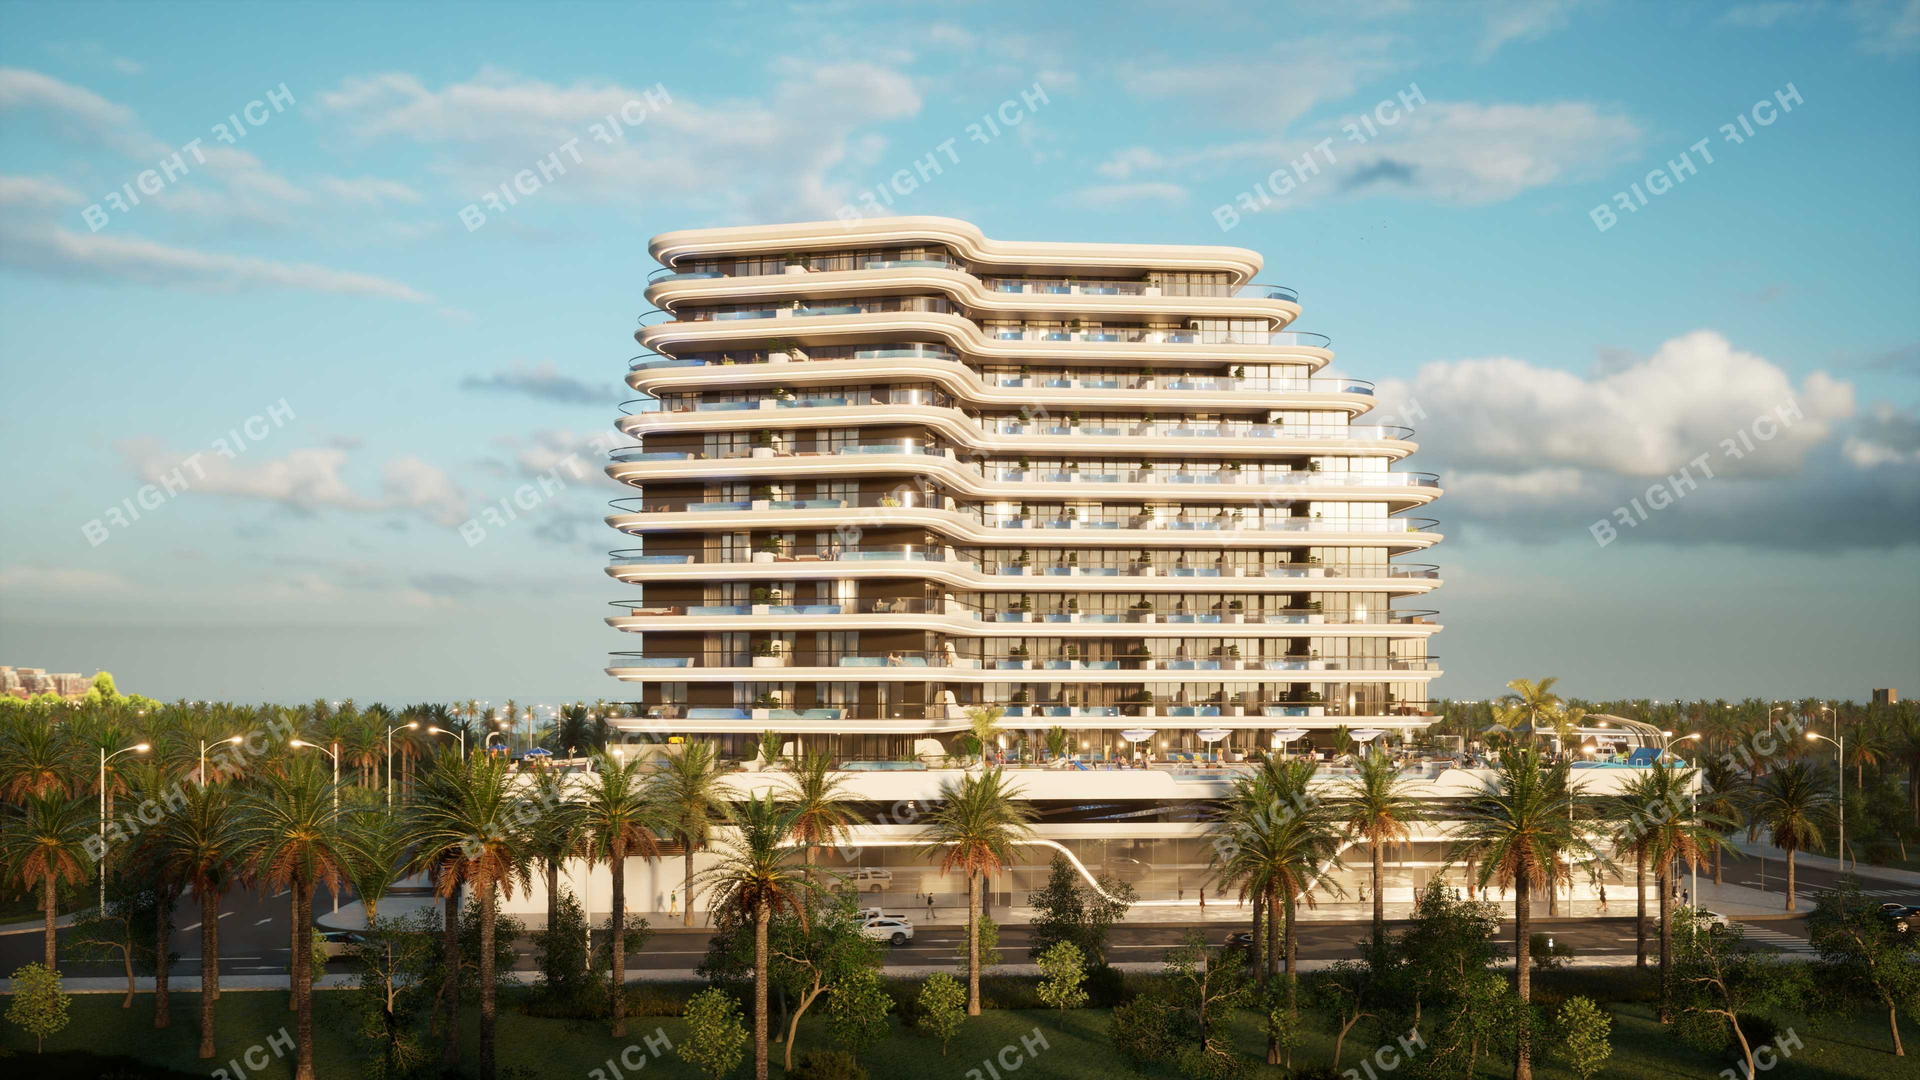 Samana Portofino, apart complex in Dubai - 6